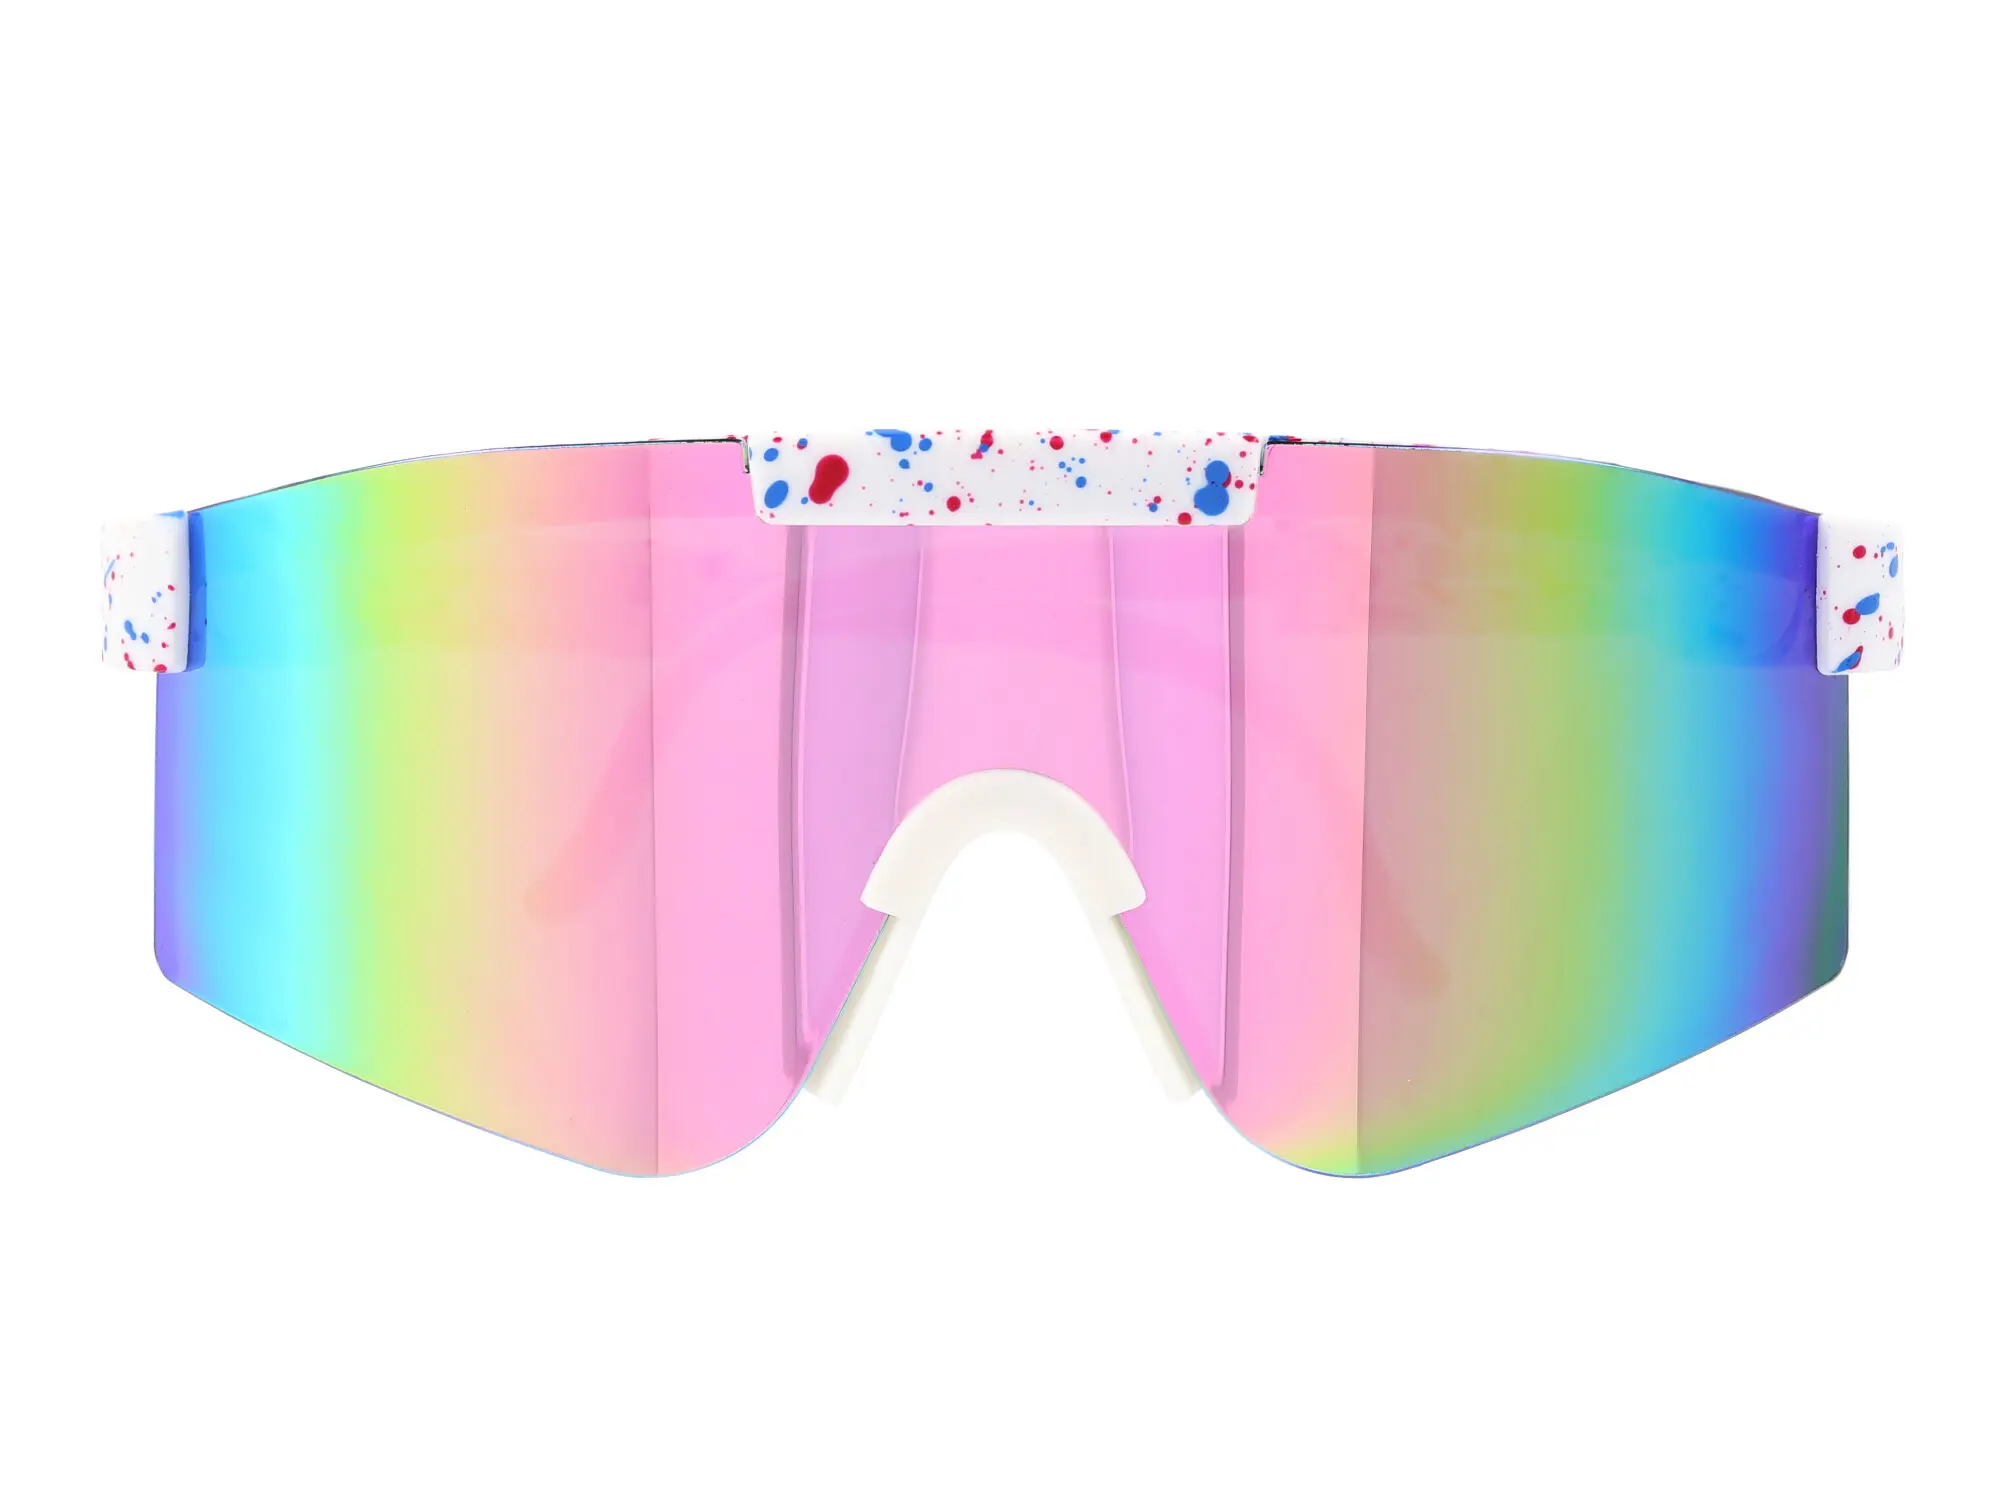 Sonnenbrille "extra Schnell" - Weiß / Pink verspiegelt, Art.-Nr.: 10076712 - Bild 1